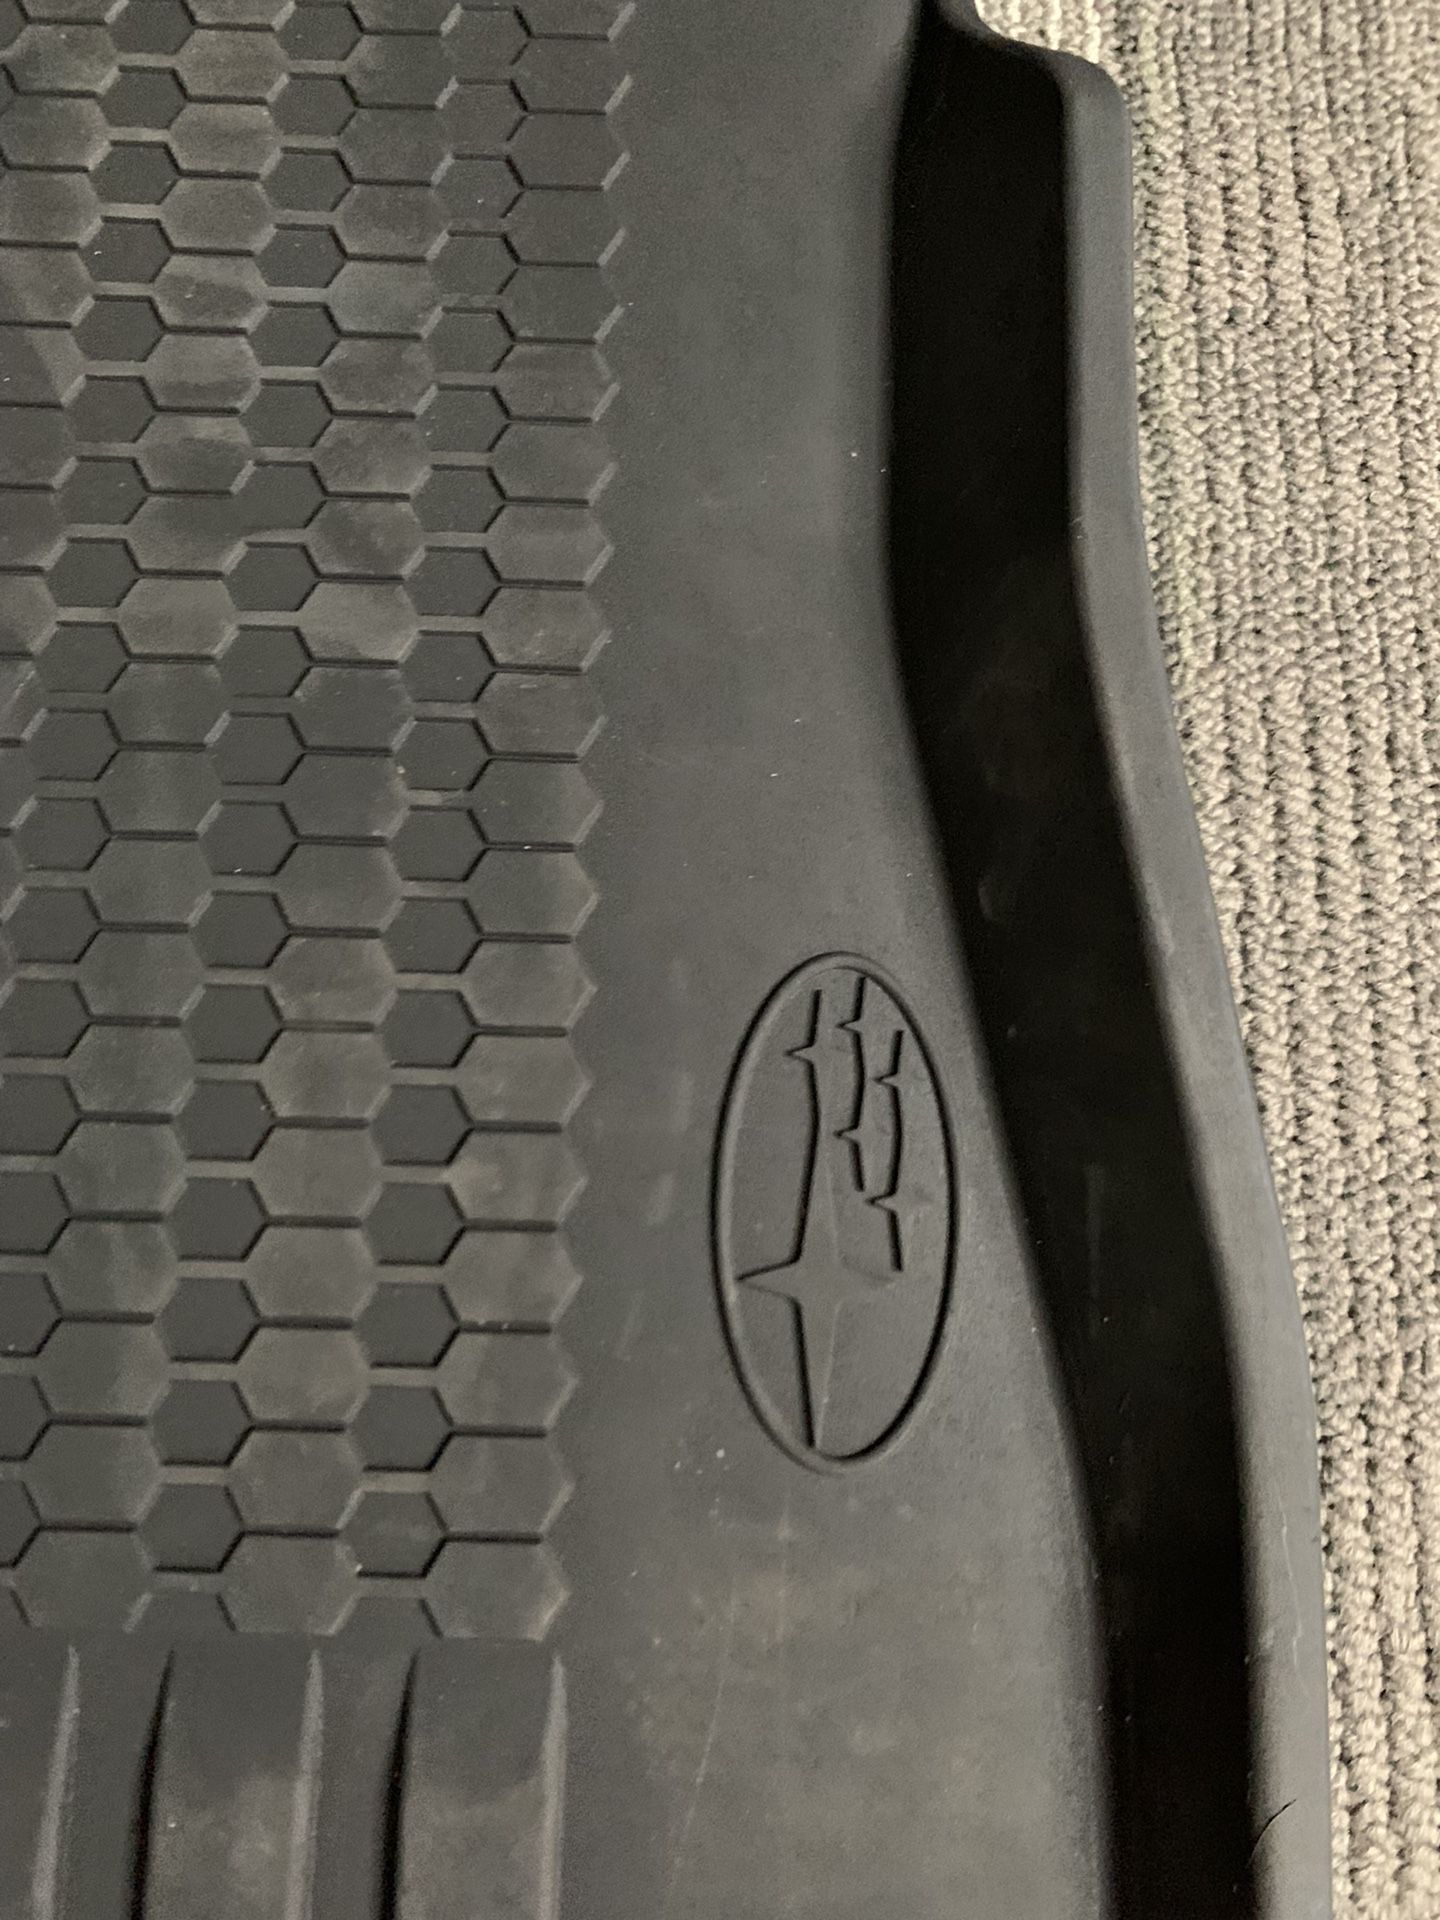 OEM Subaru Crosstrek Rubber Floor mats